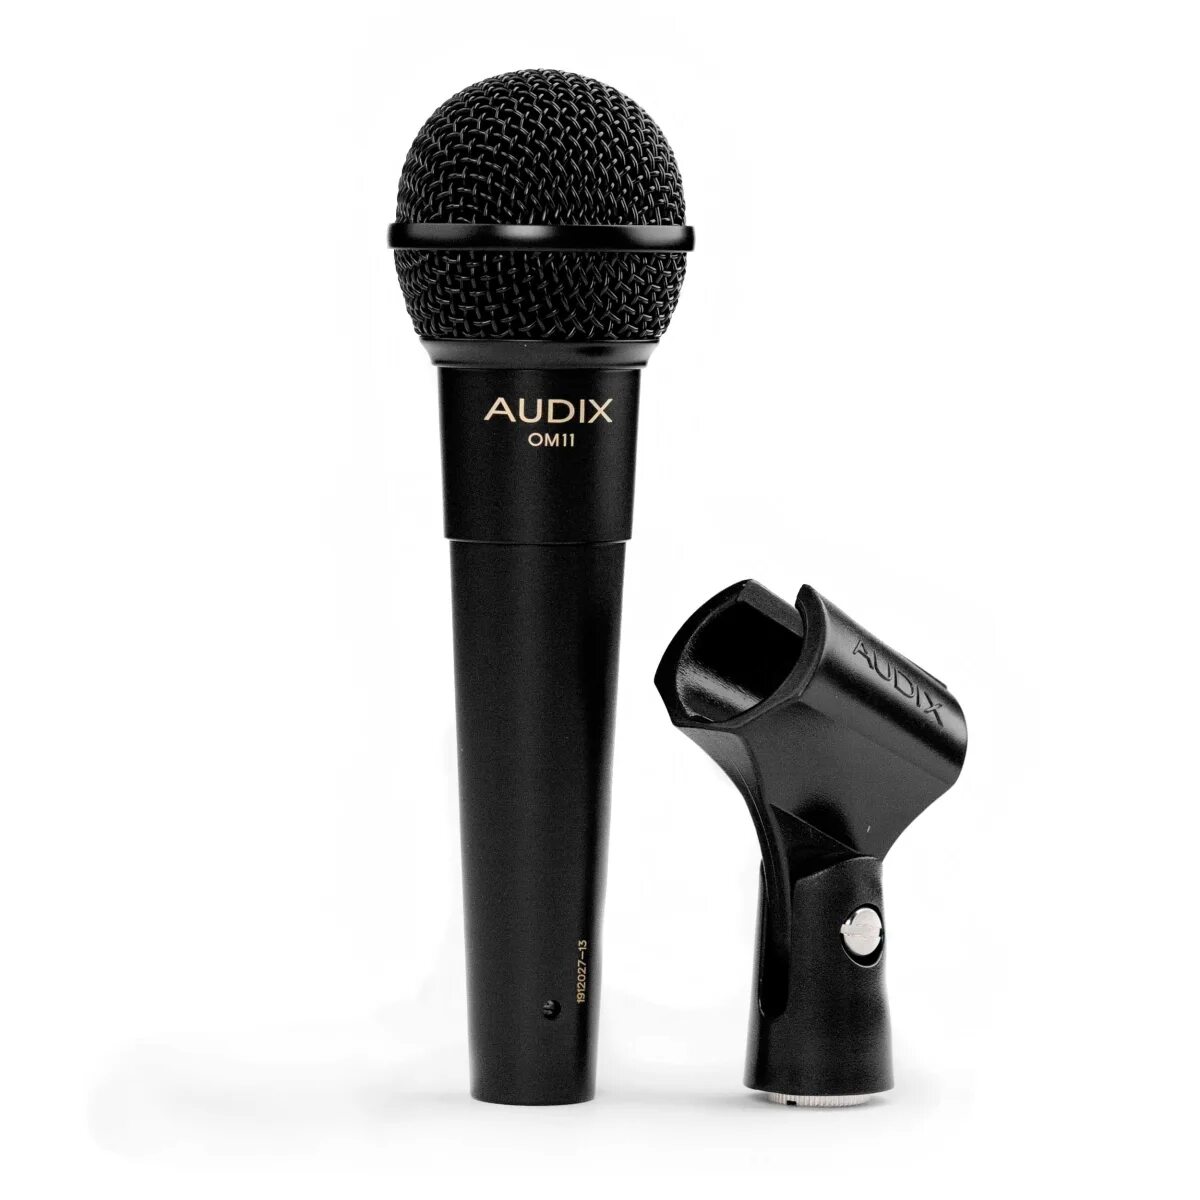 Купить микрофон для игр. Микрофон Audix om7. Audix om2 динамический микрофон. Вокальный микрофон Audix f50. Шнуровой микрофон Audix om2s.